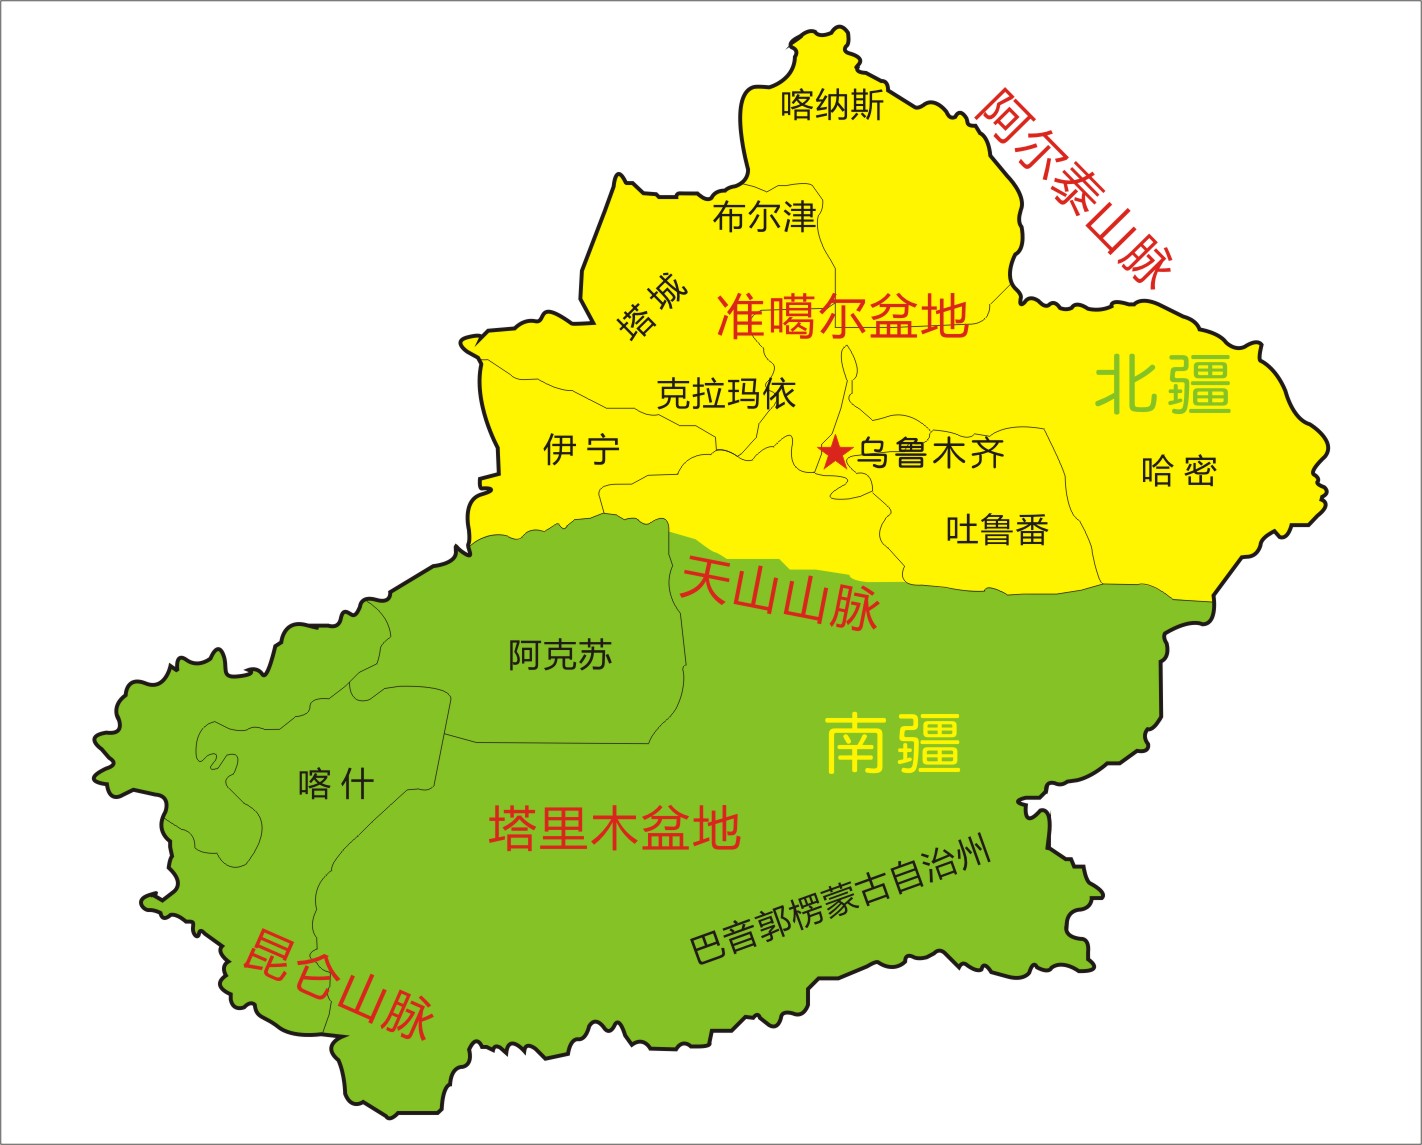             新疆区域划分图